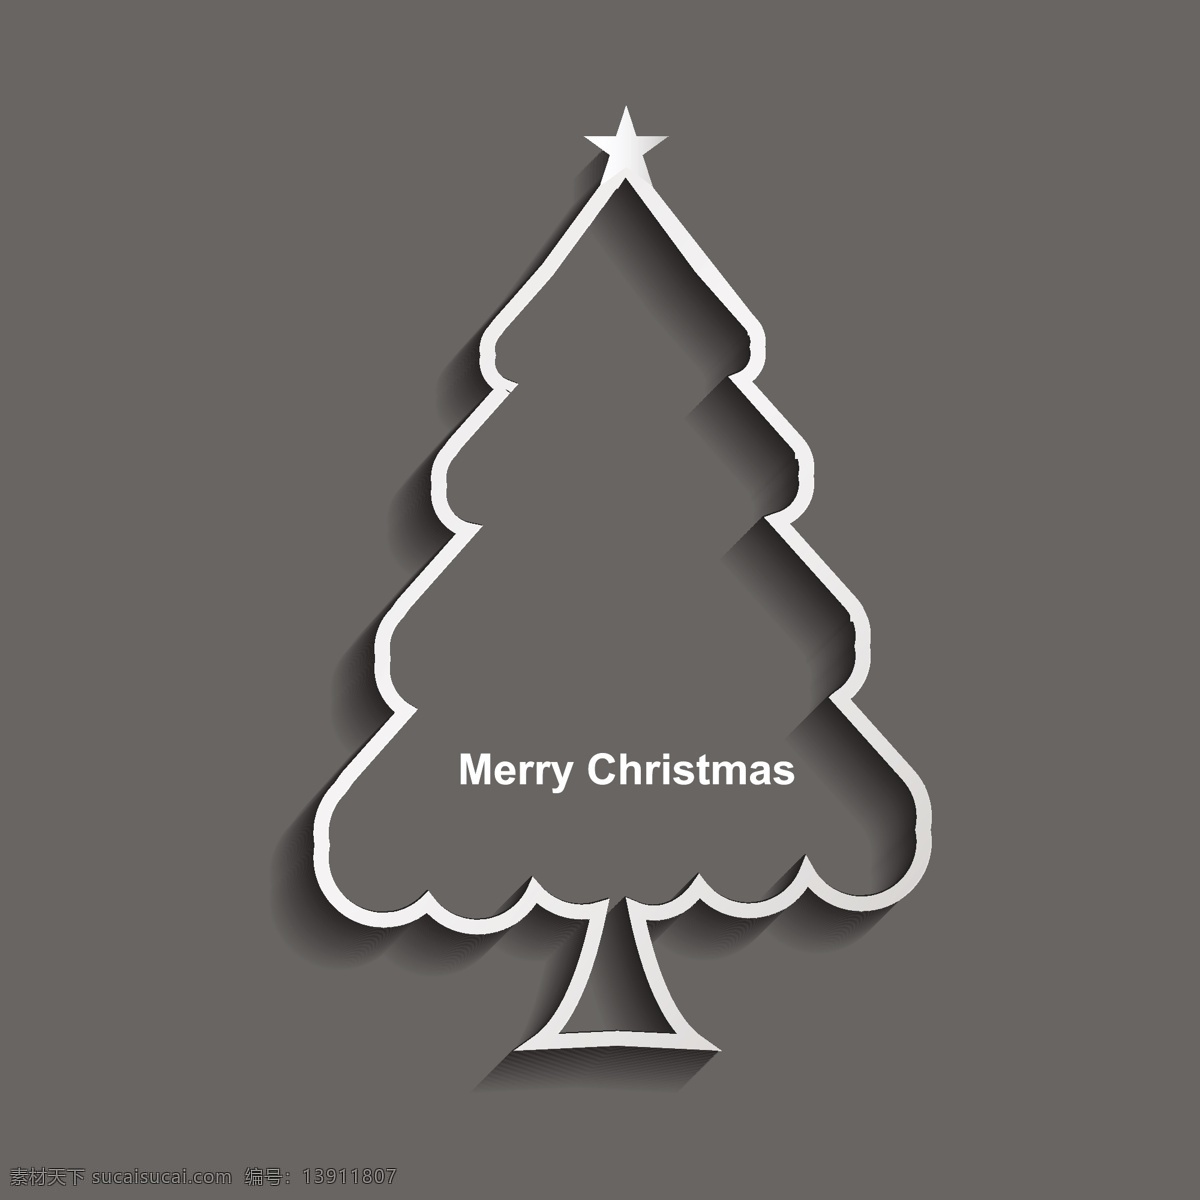 圣诞树 圣诞 卡片 背景 抽象 明星卡 模板 圣诞快乐 圣诞背景 壁纸 圣诞卡 节日 事件 问候 星星背景 美丽 之星 灰色